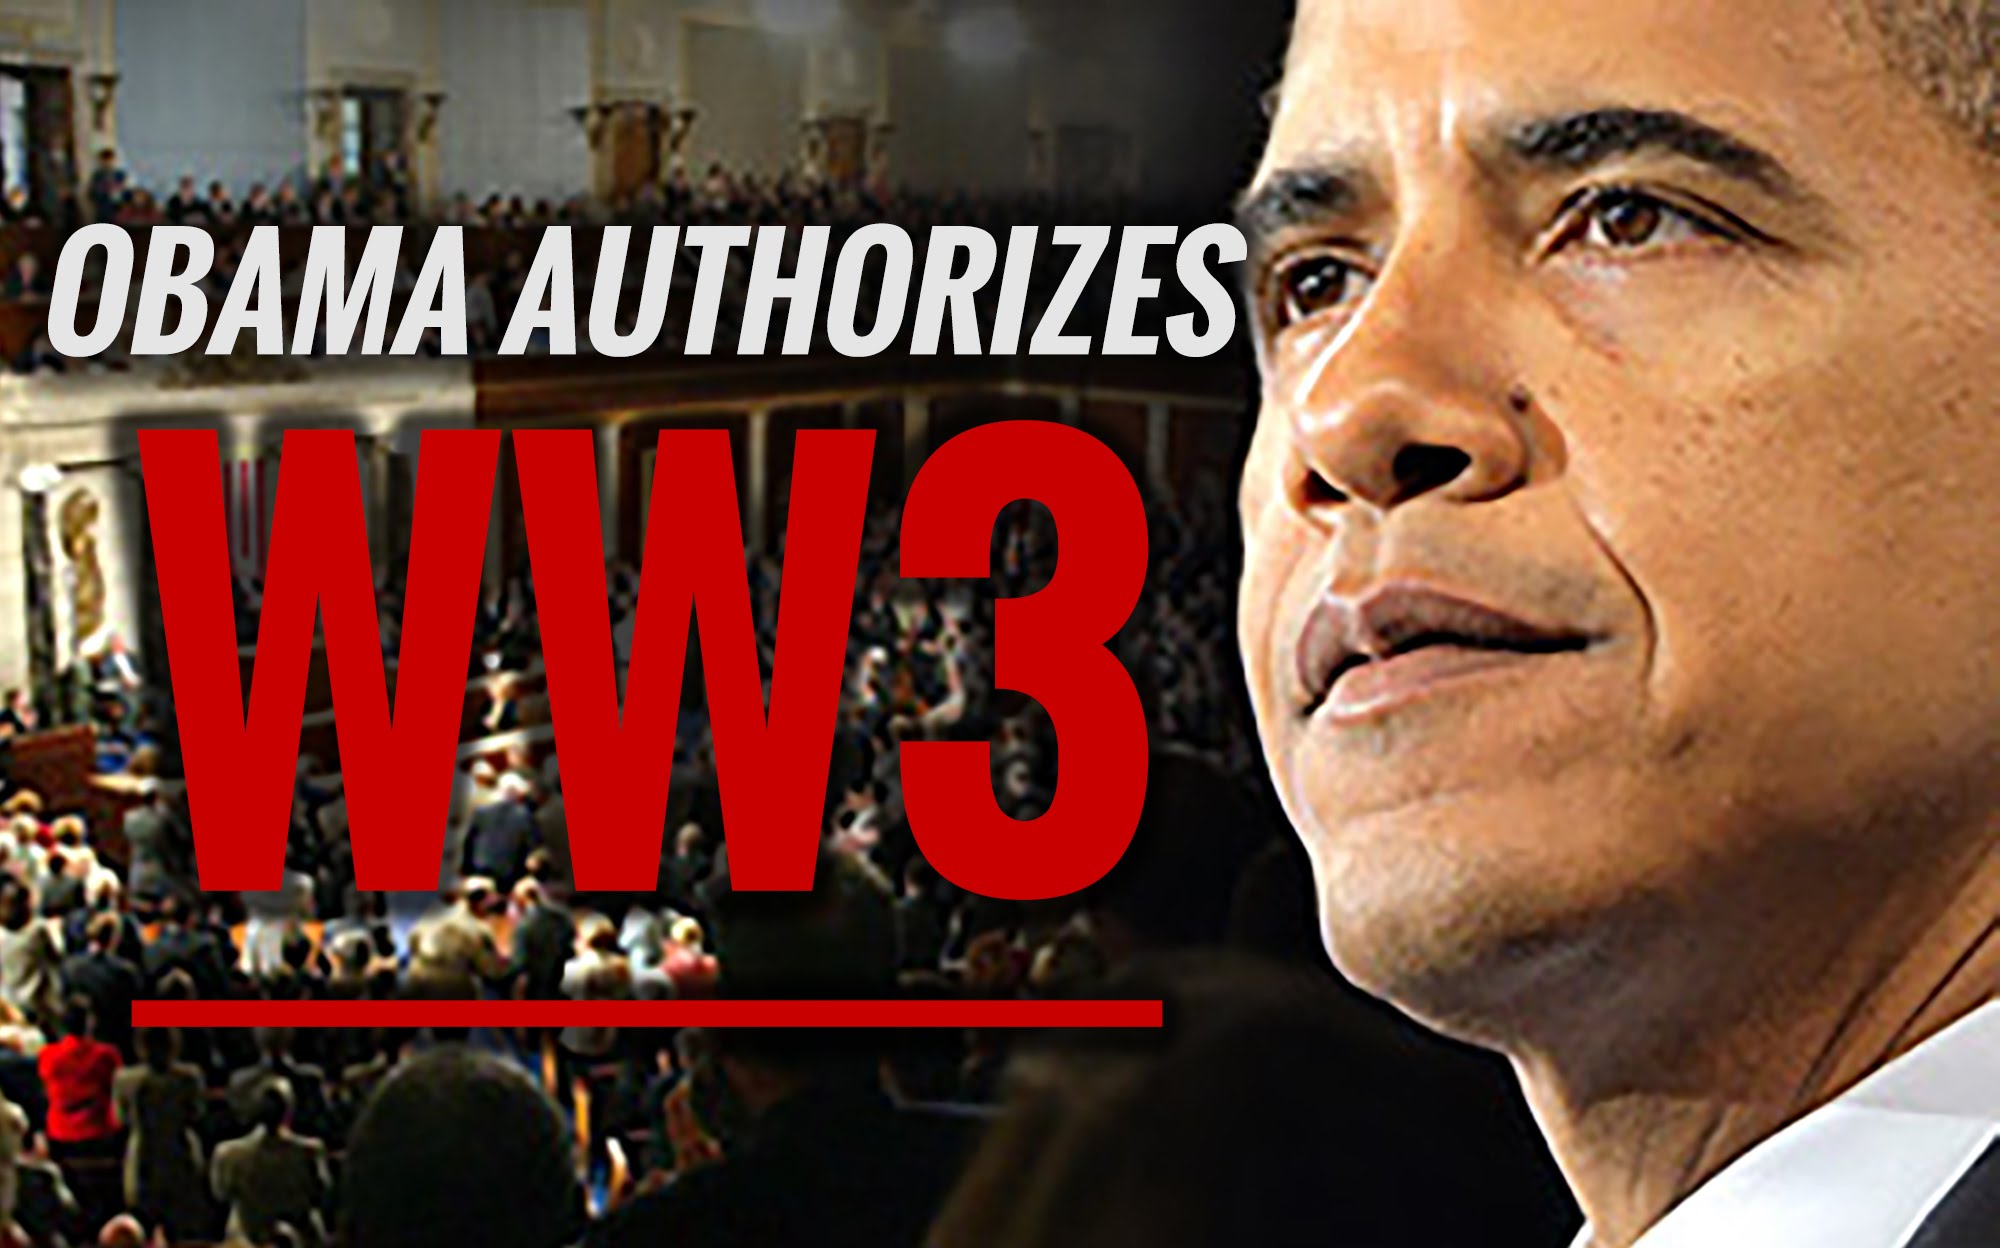 Obama Authorizes World War 3